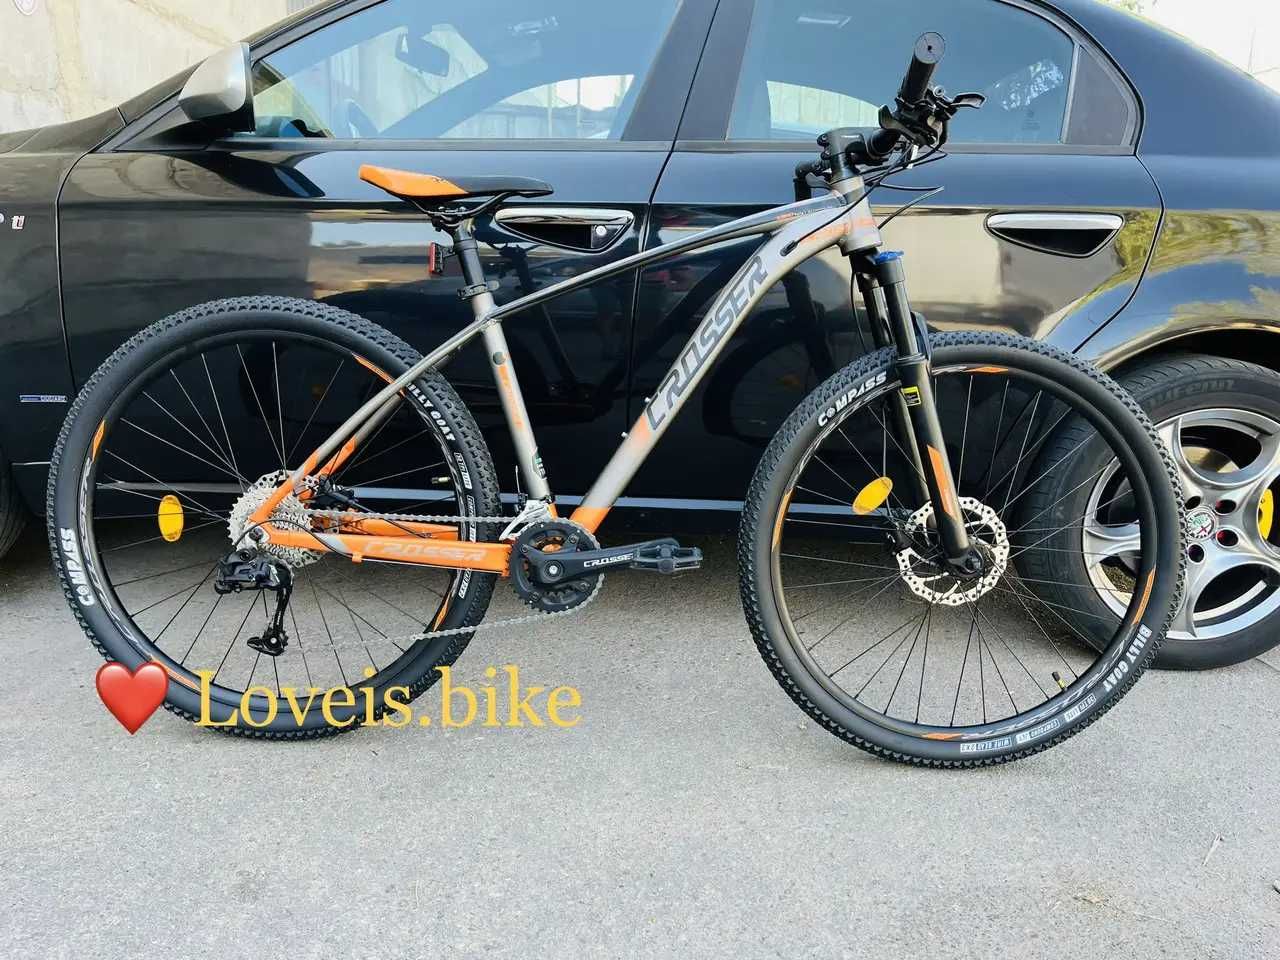 Горный алюминиевый велосипед 29 Crosser x880 гидравлика 2x9 Shimano